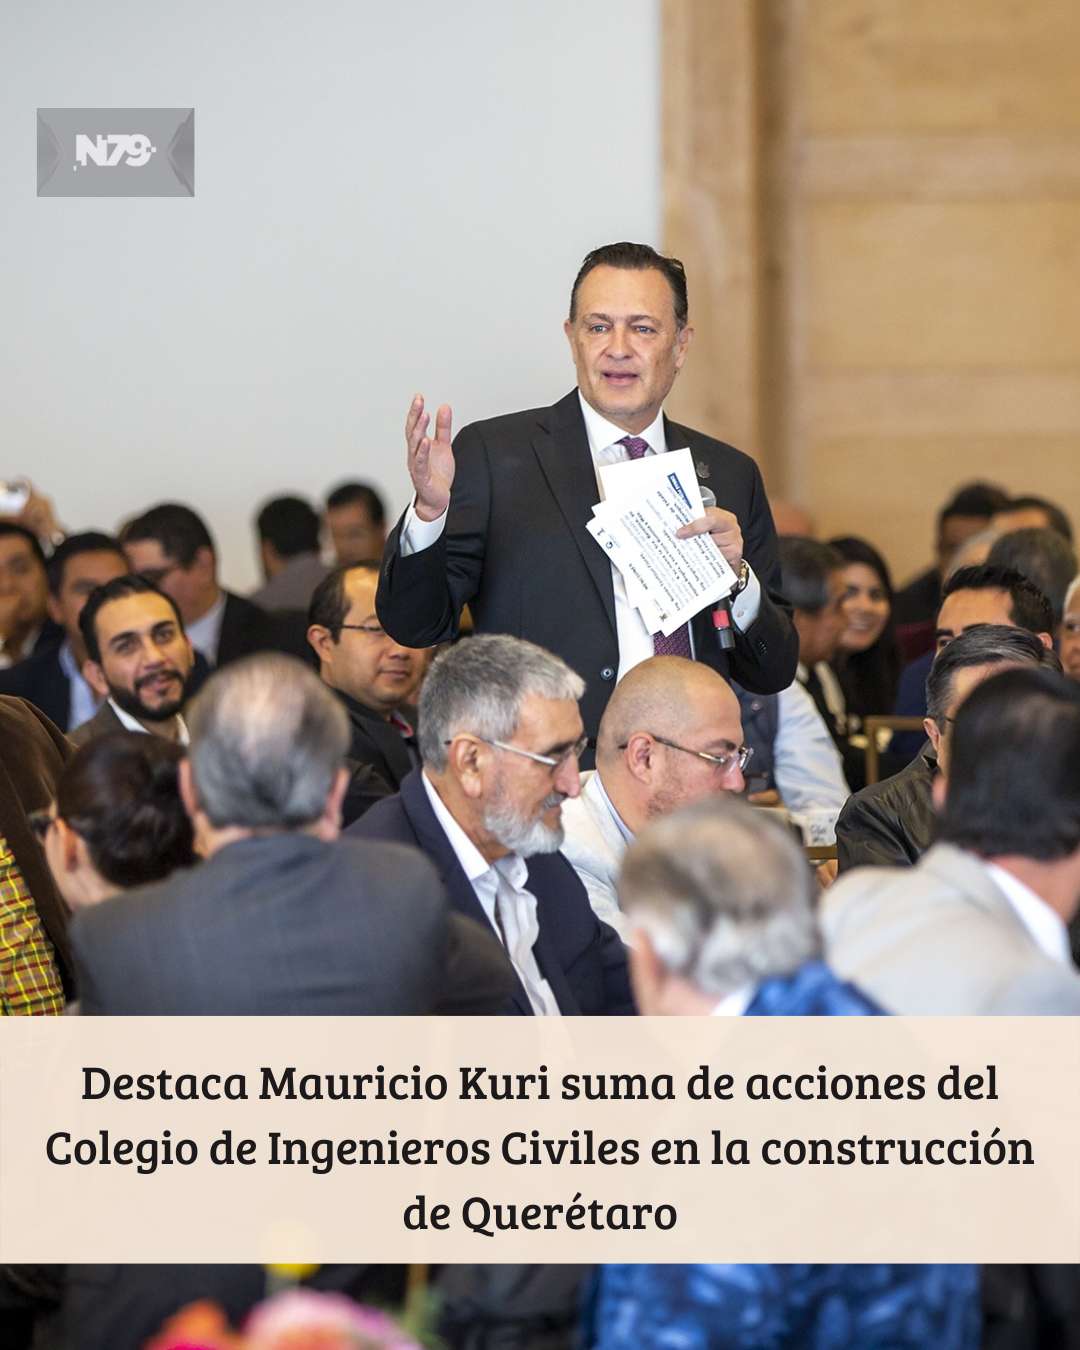 Destaca Mauricio Kuri suma de acciones del Colegio de Ingenieros Civiles en la construcción de Querétaro